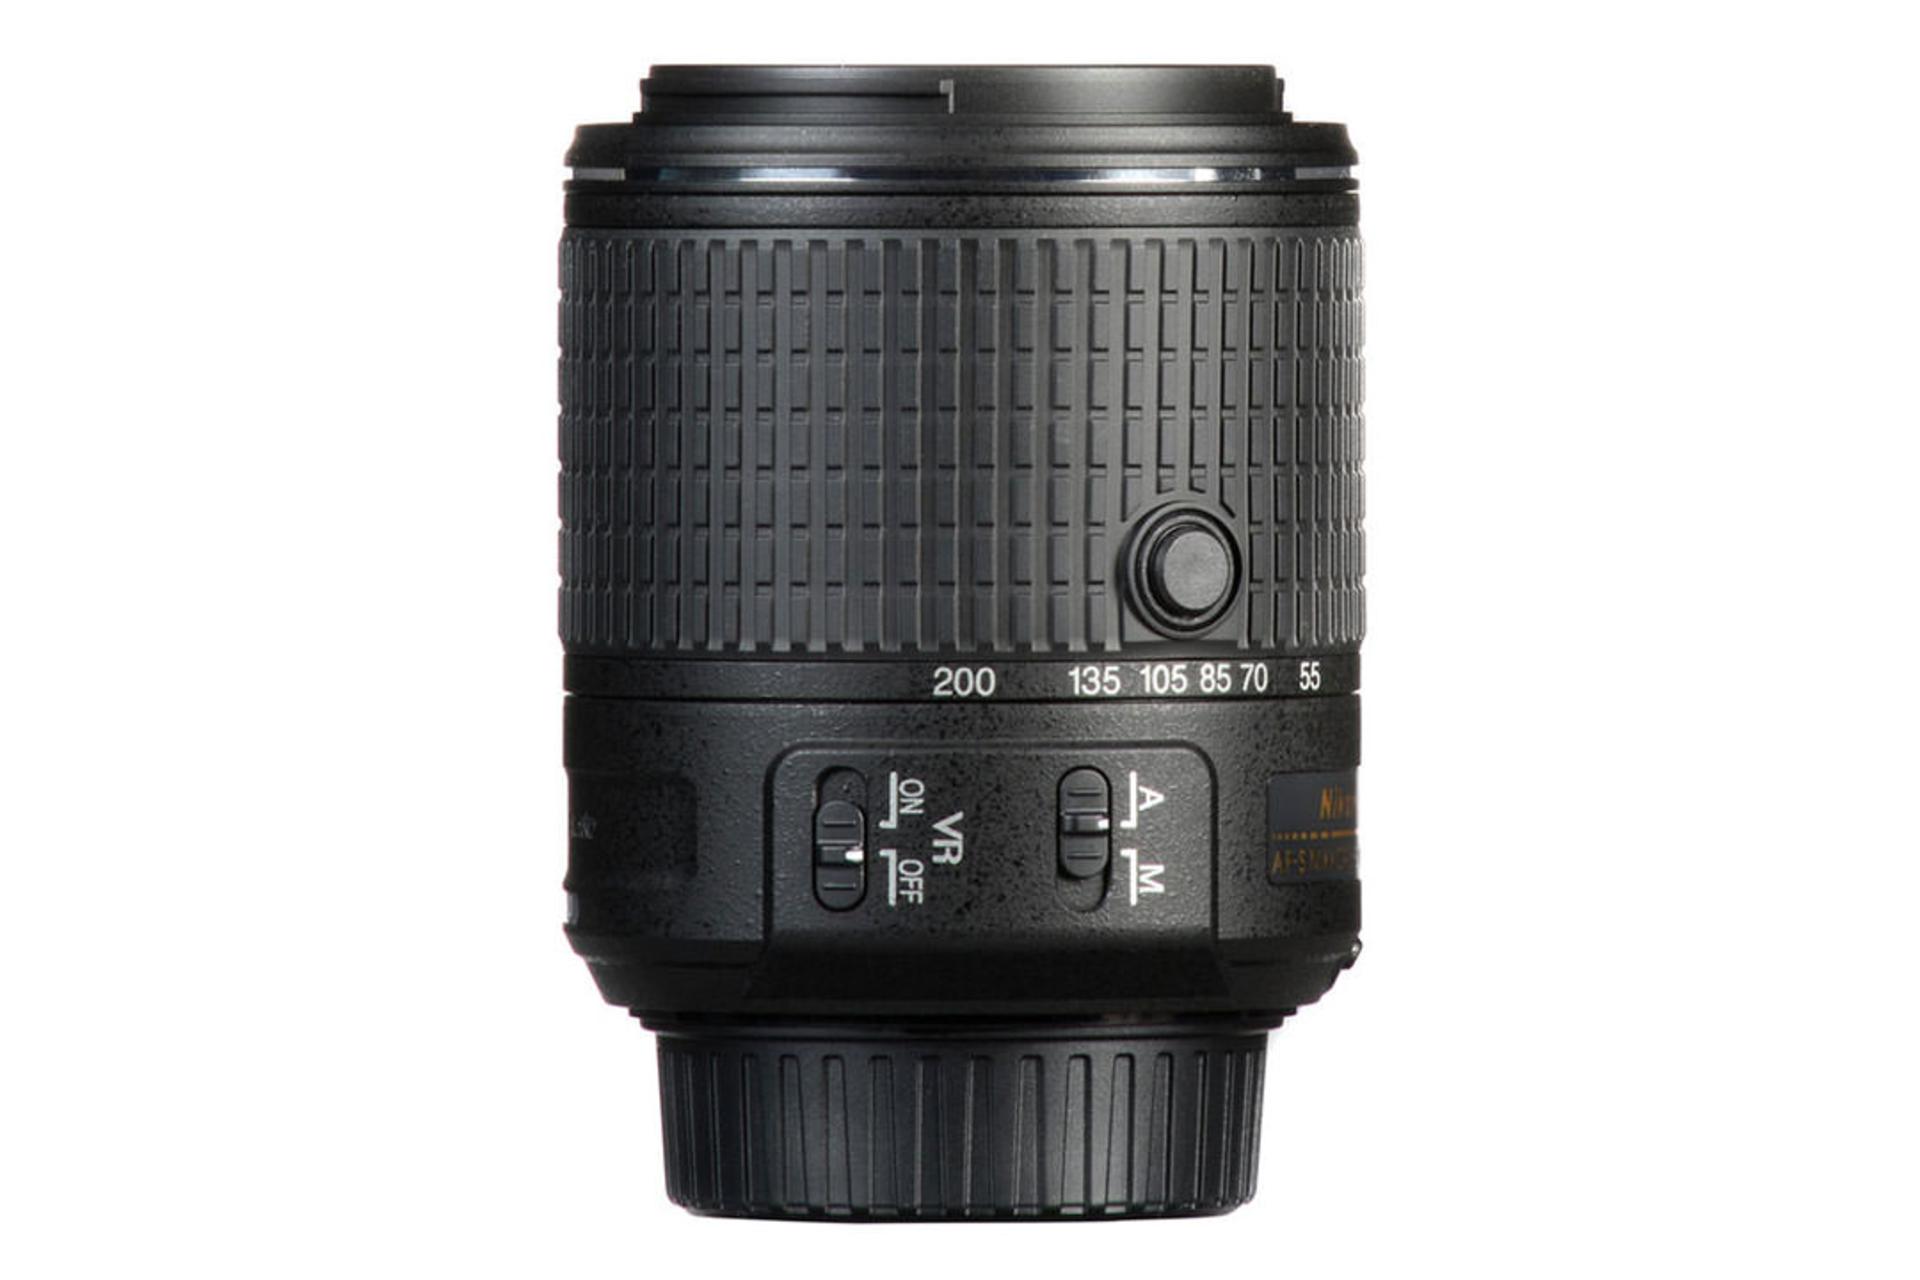 Nikon AF-S DX Nikkor 55-200mm f/4-5.6G VR	